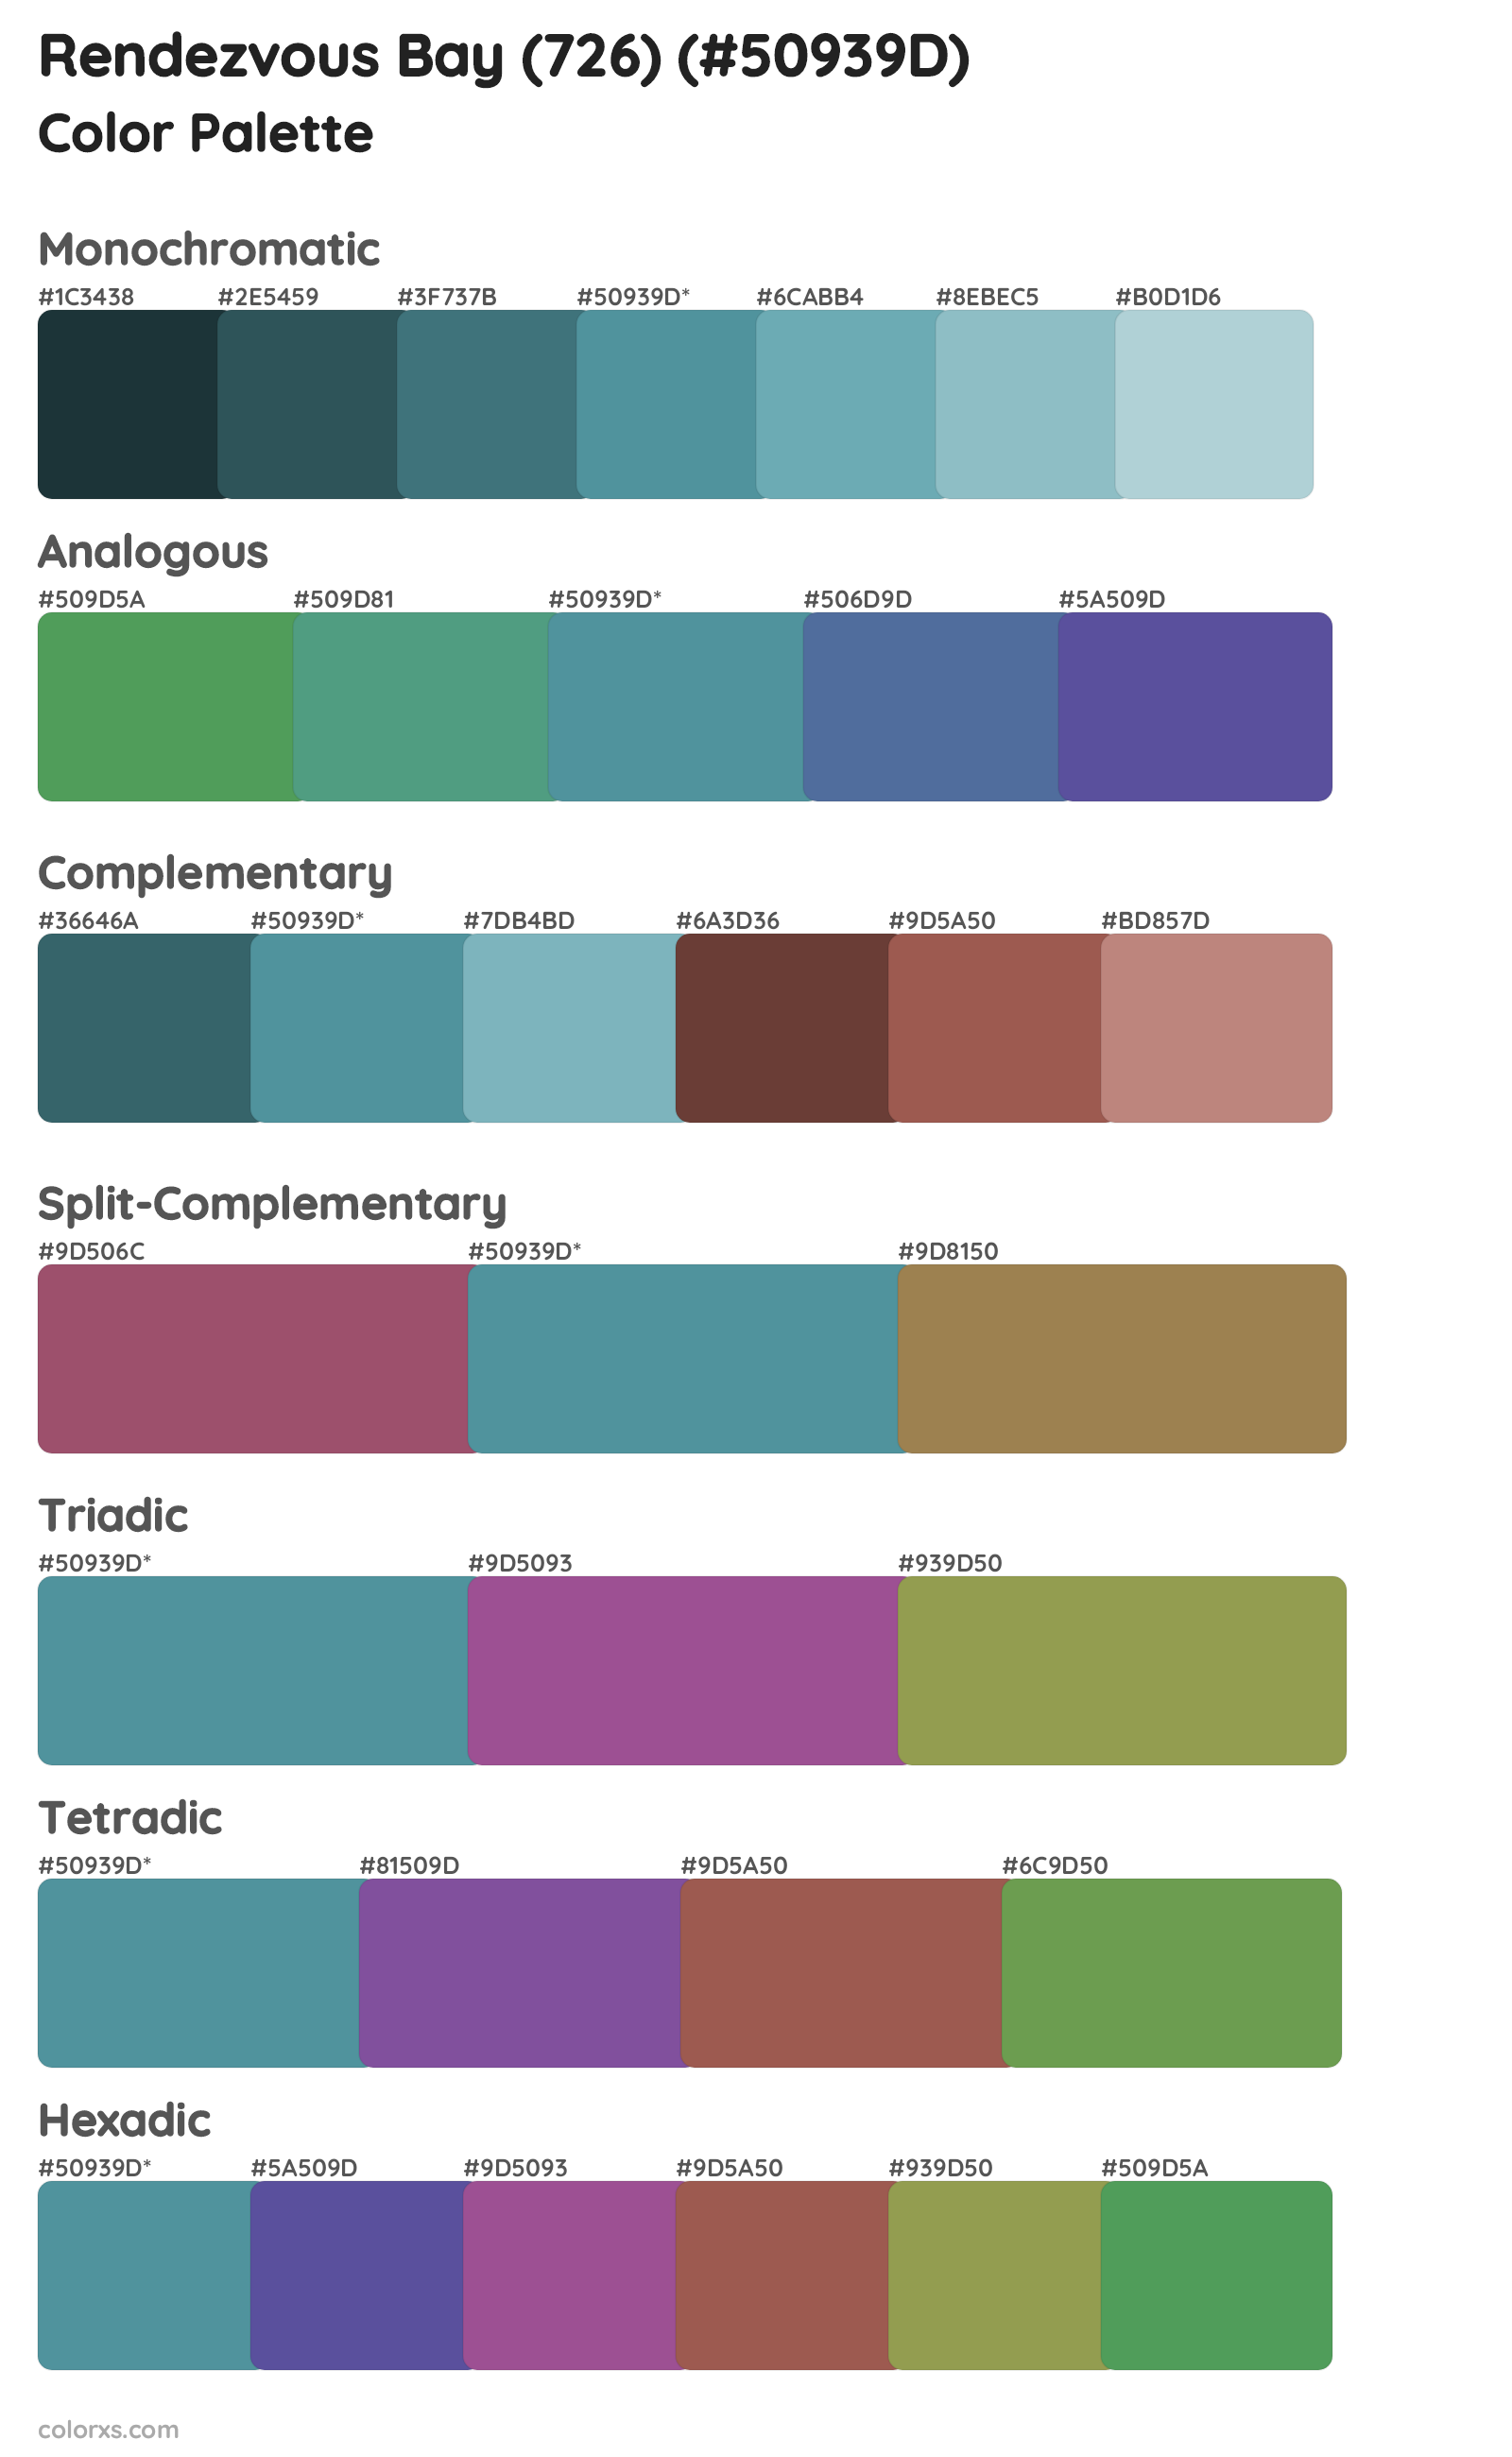 Rendezvous Bay (726) Color Scheme Palettes